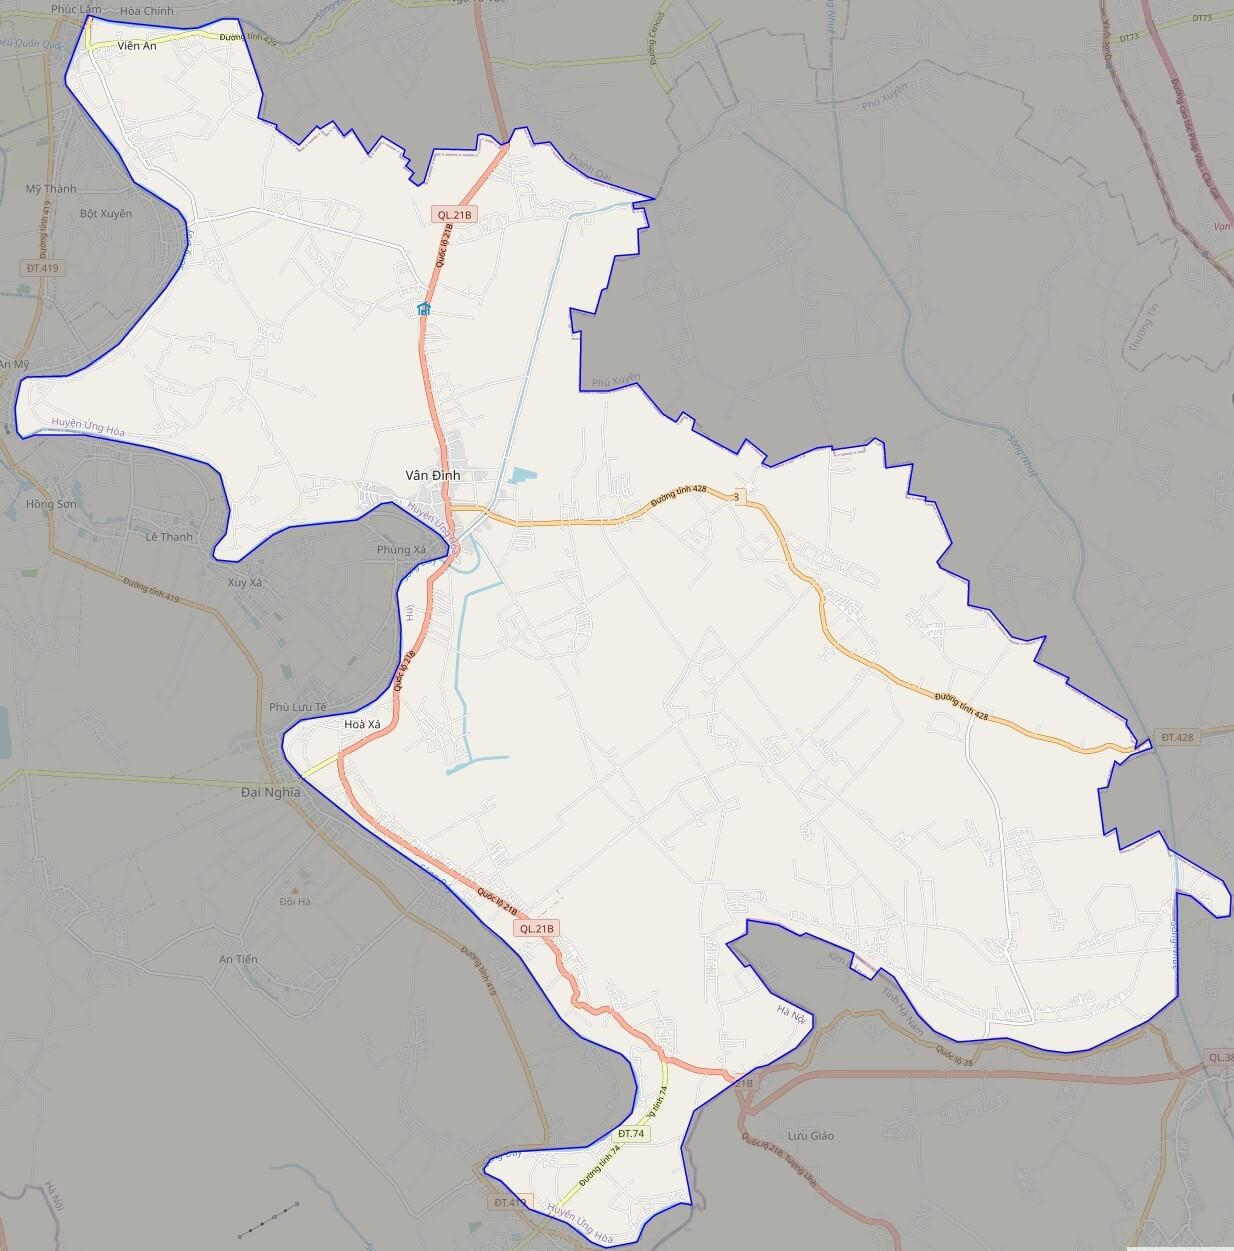 bản đồ giao thông huyện Ứng Hòa